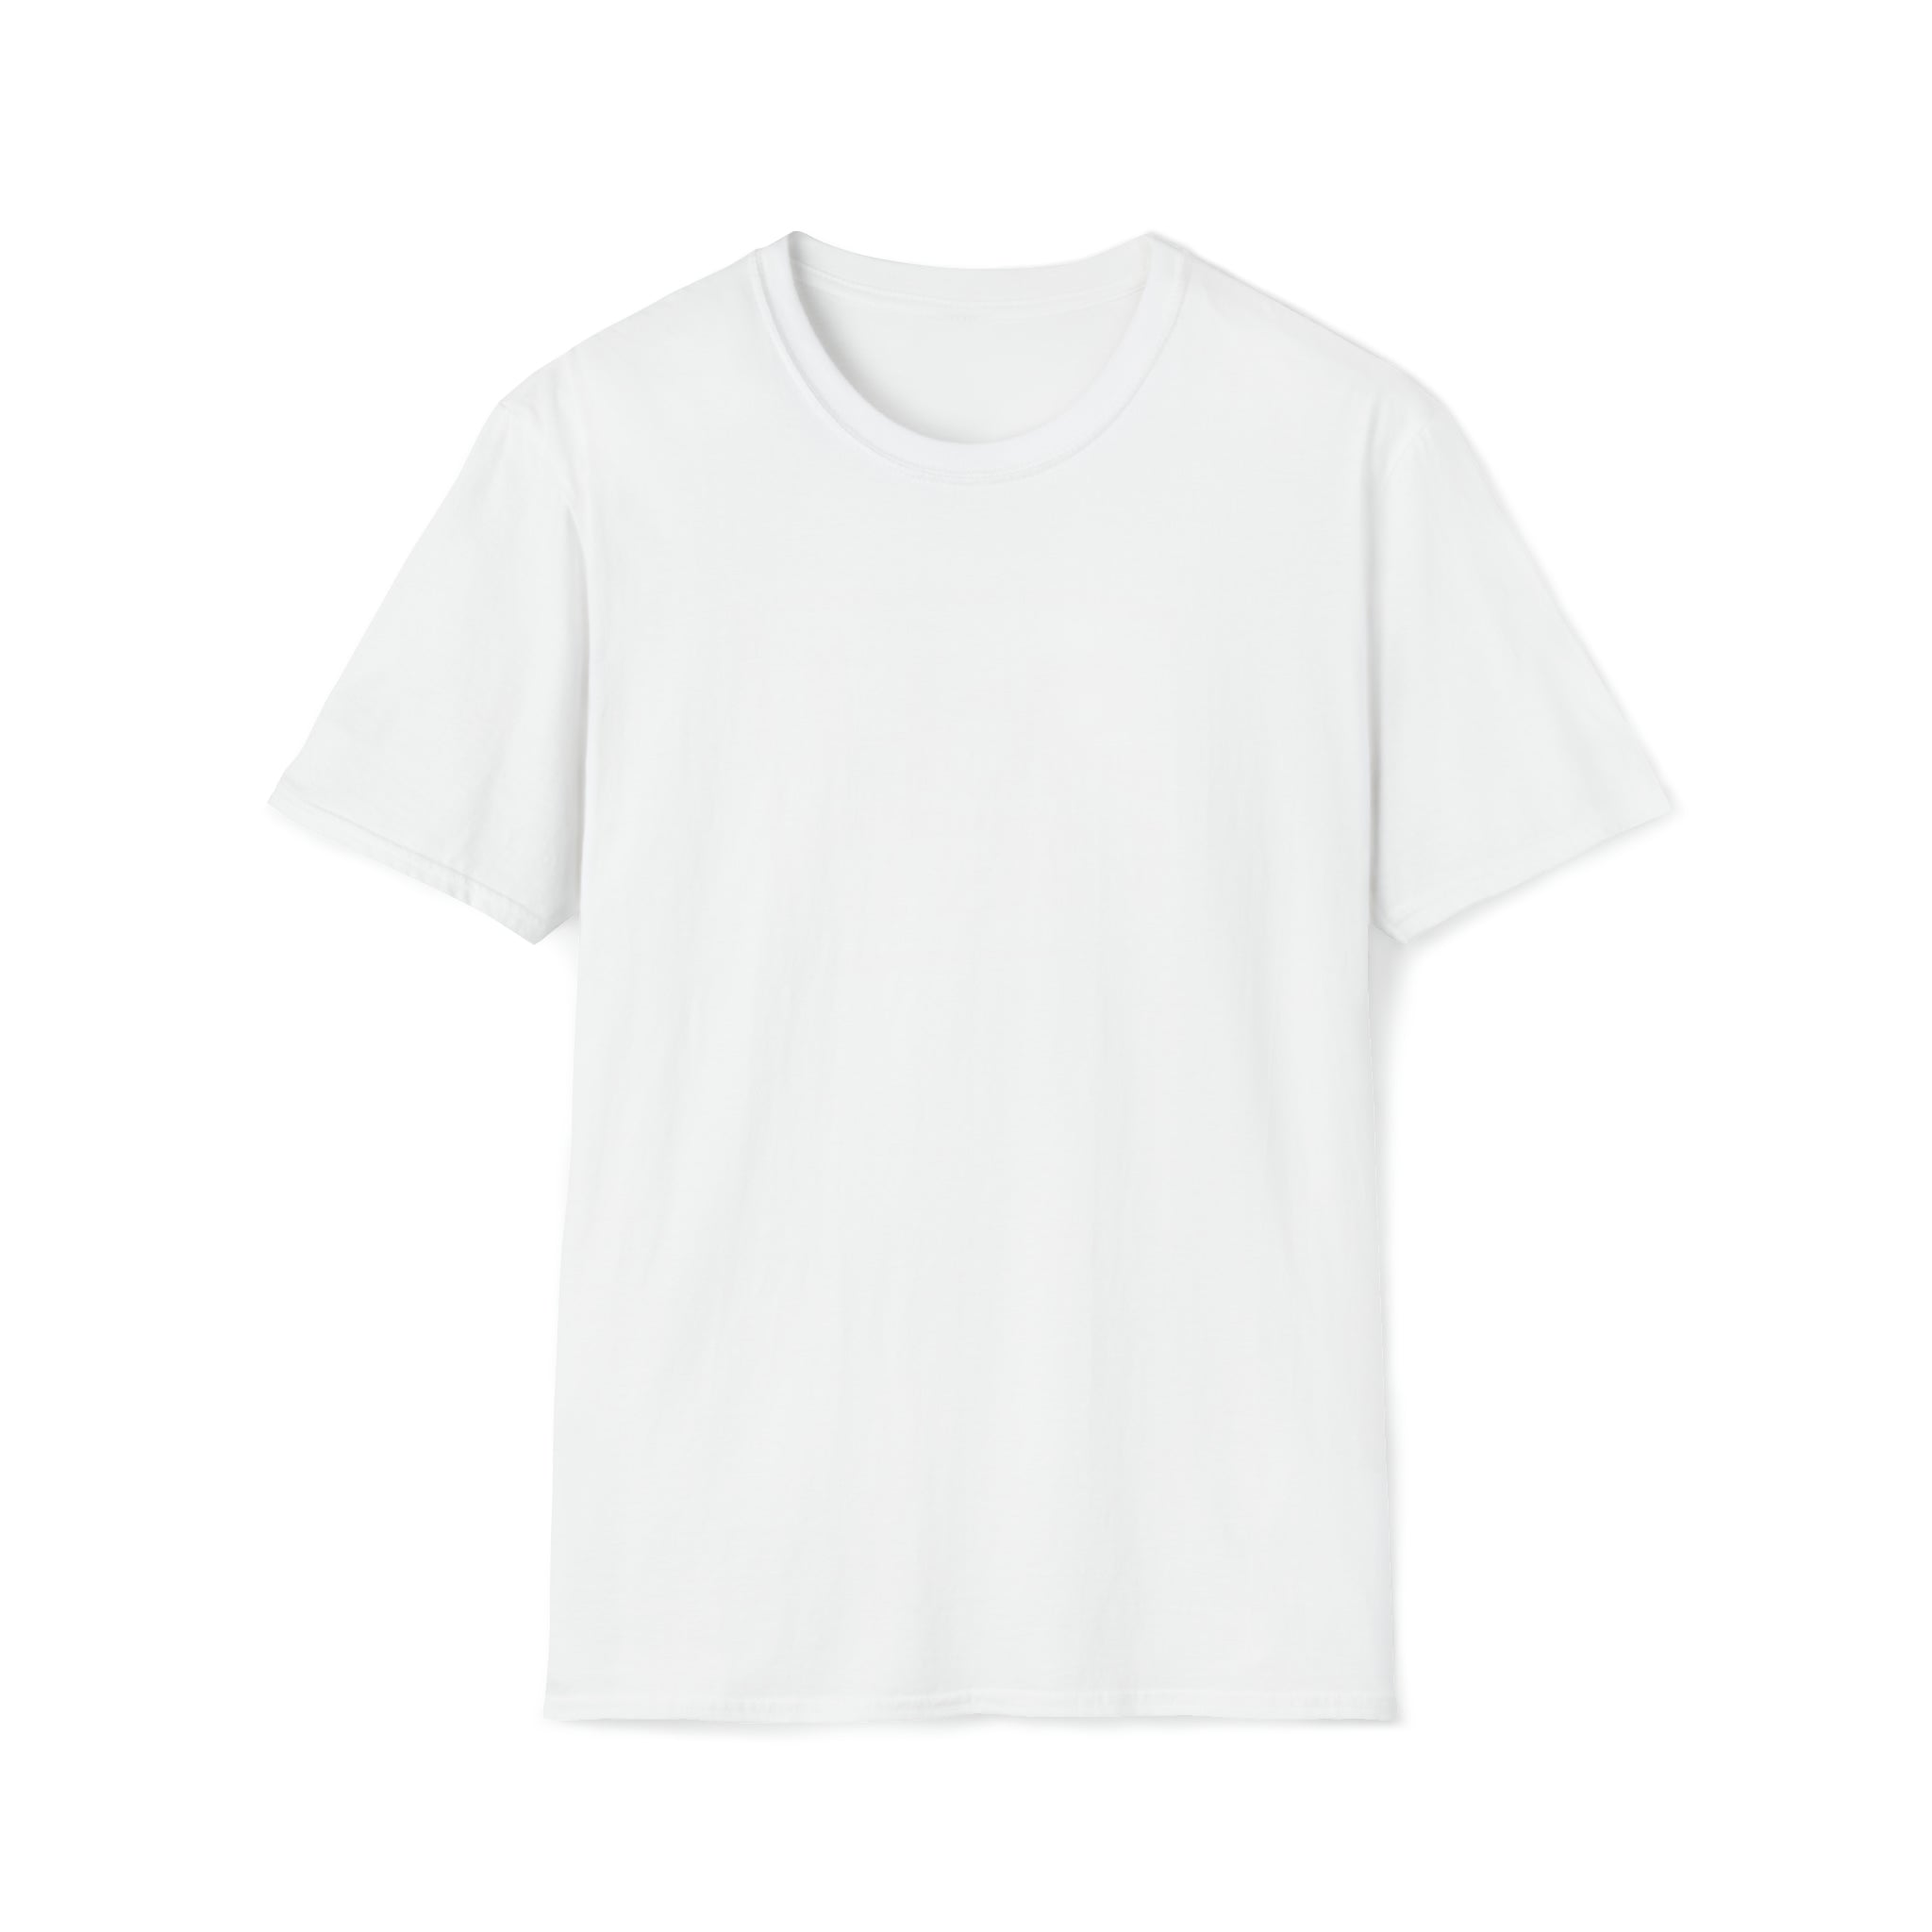 Horton Band Tee Unisex Softstyle T-Shirt